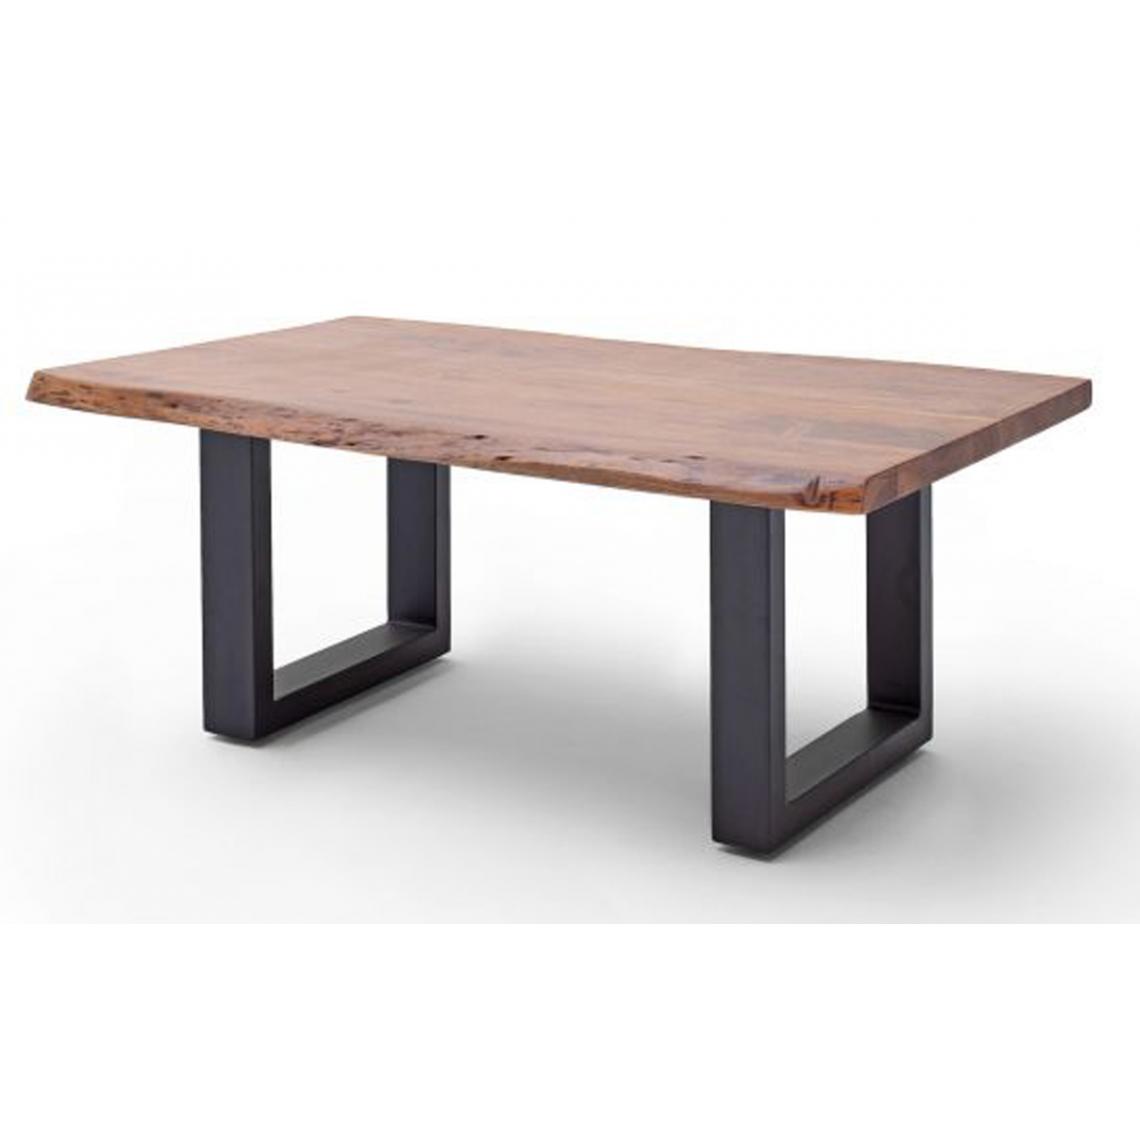 Pegane - Table basse en bois d'acacia massif noyer et acier anthracite - L.110 x H.45 x P.70 cm - Tables basses